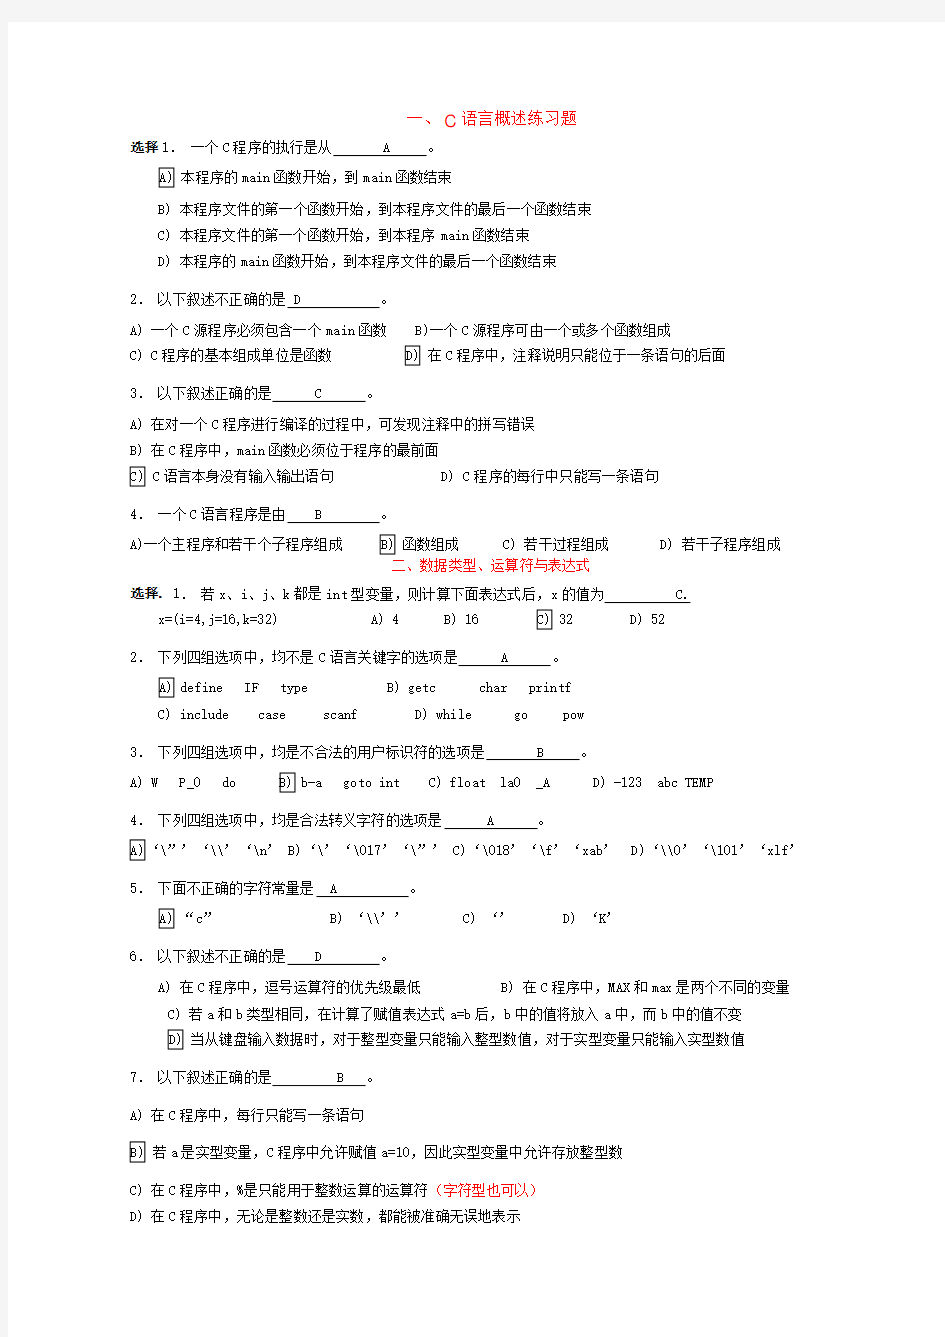 (完整版)【推荐】C语言各章节练习题(含答案)